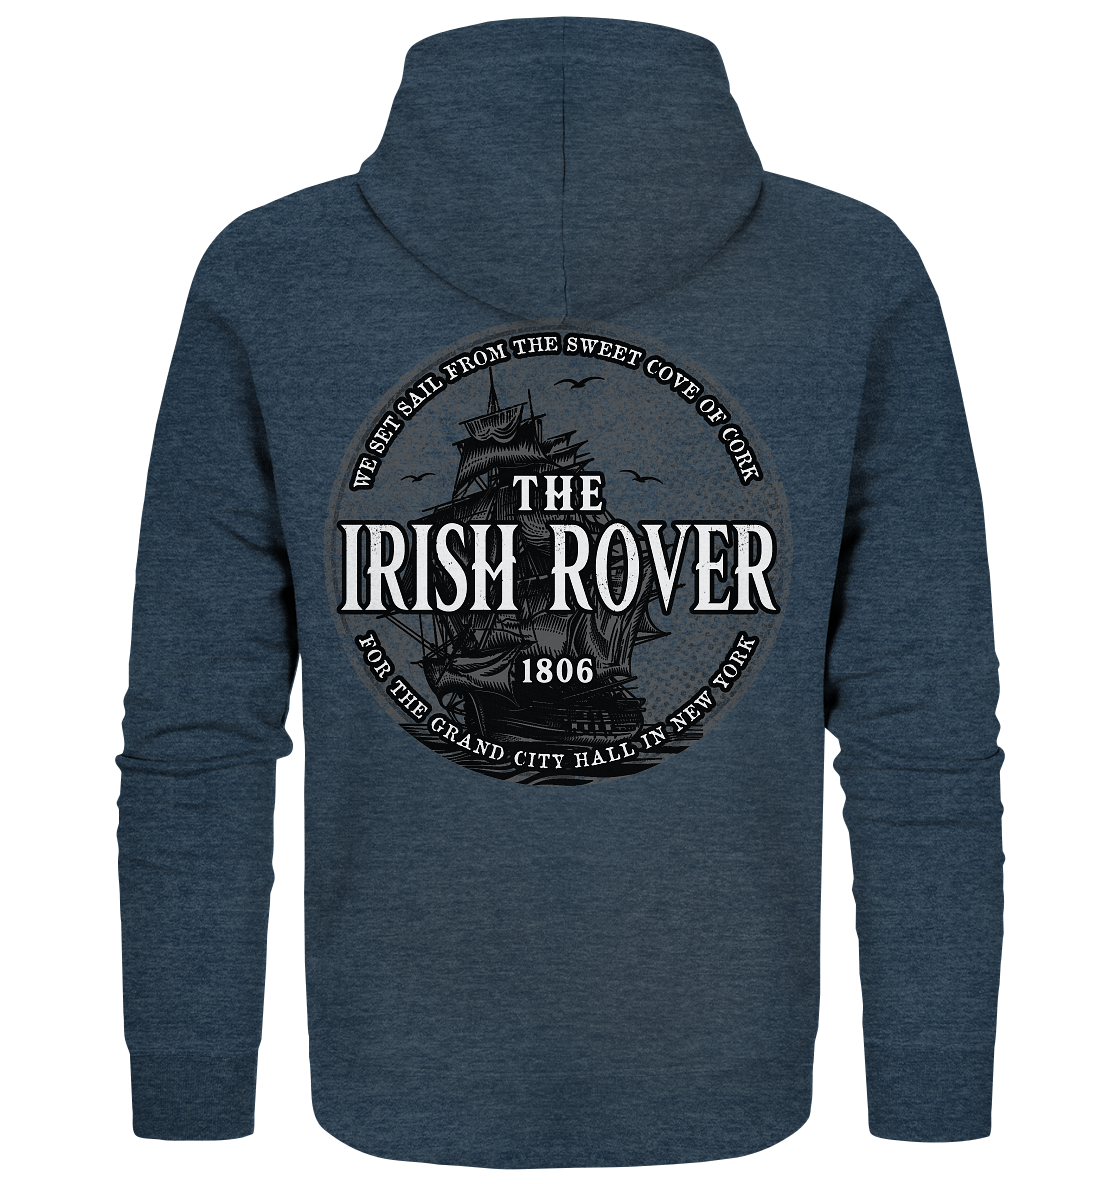 "The Irish Rover" - Organic Zipper